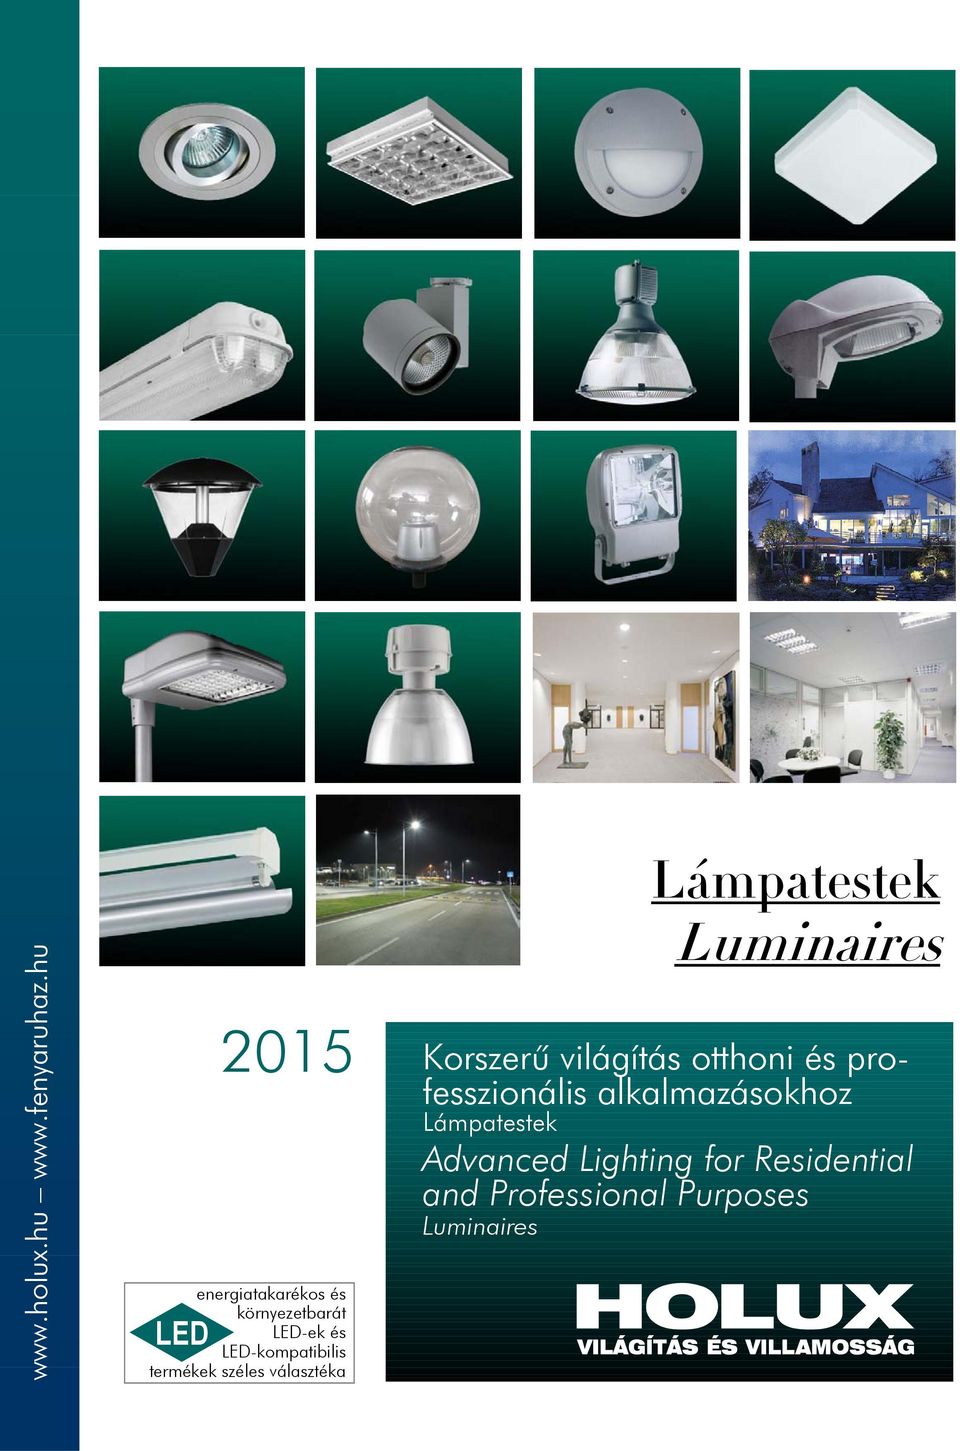 termékek széles választéka Lámpatestek Luminaires Korszerû világítás